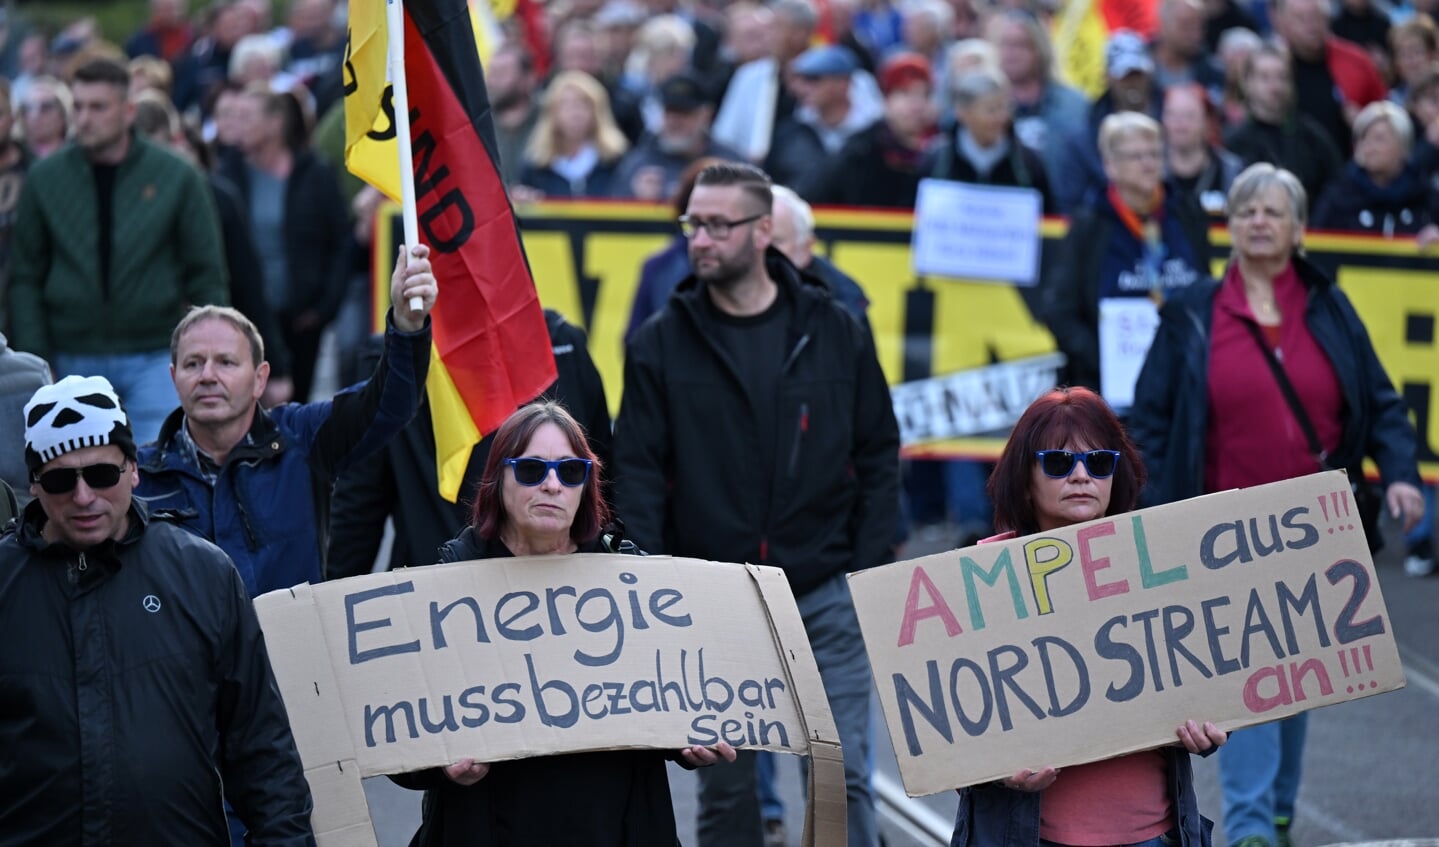 Tilhængere af AfD har stået bag demonstrationer med krav om at åbne Nord Stream 2. Foto: